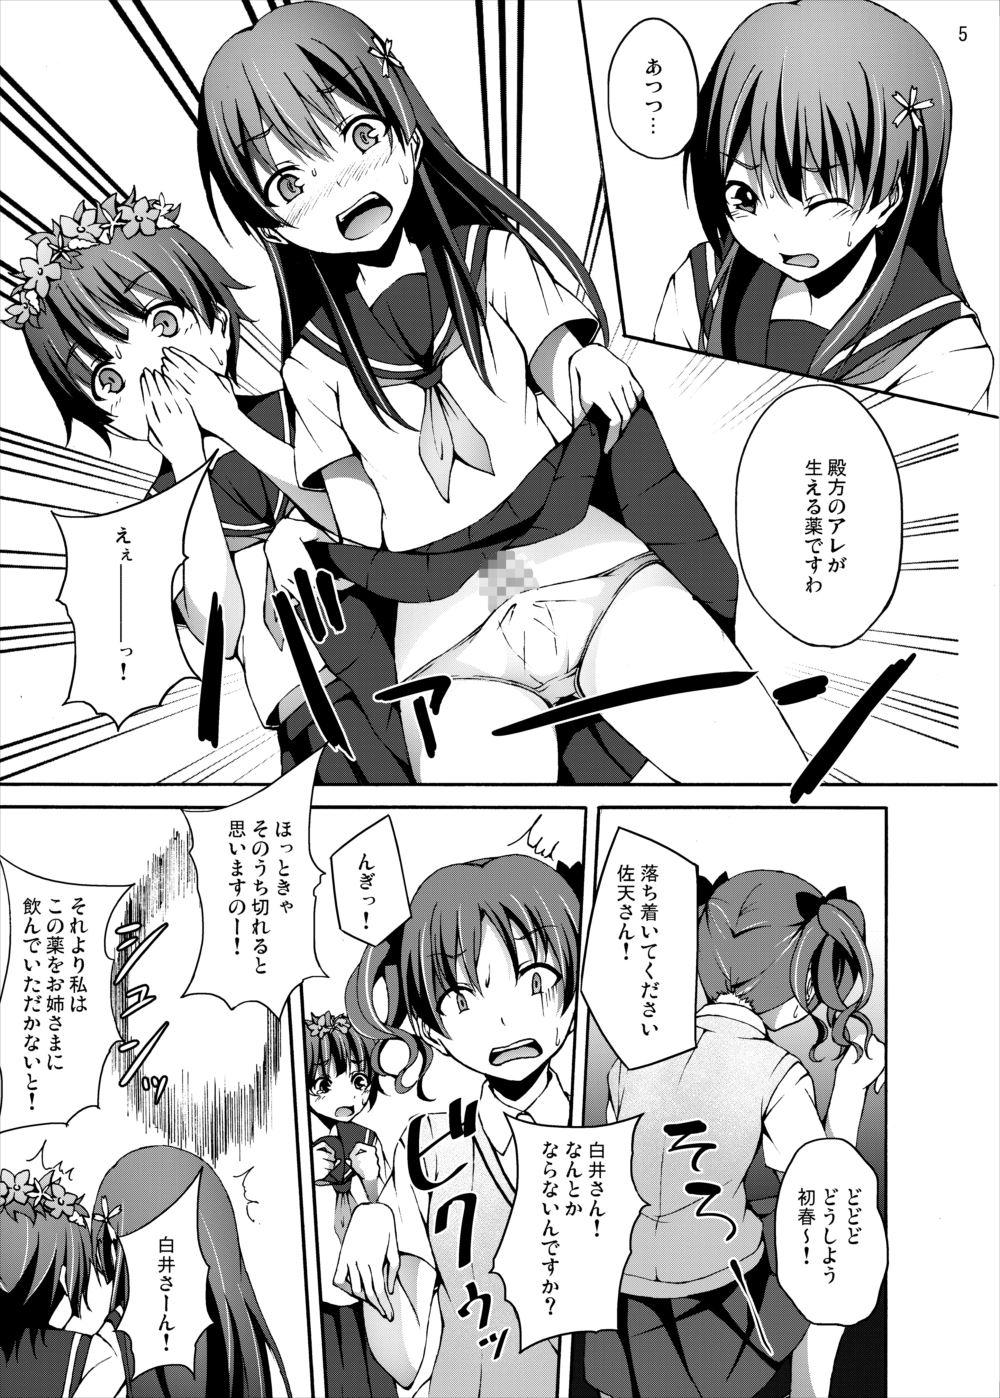 Action Ryoujoku Jigoku 4 - Futanari Stalker Rape... - Toaru kagaku no railgun Roundass - Page 4